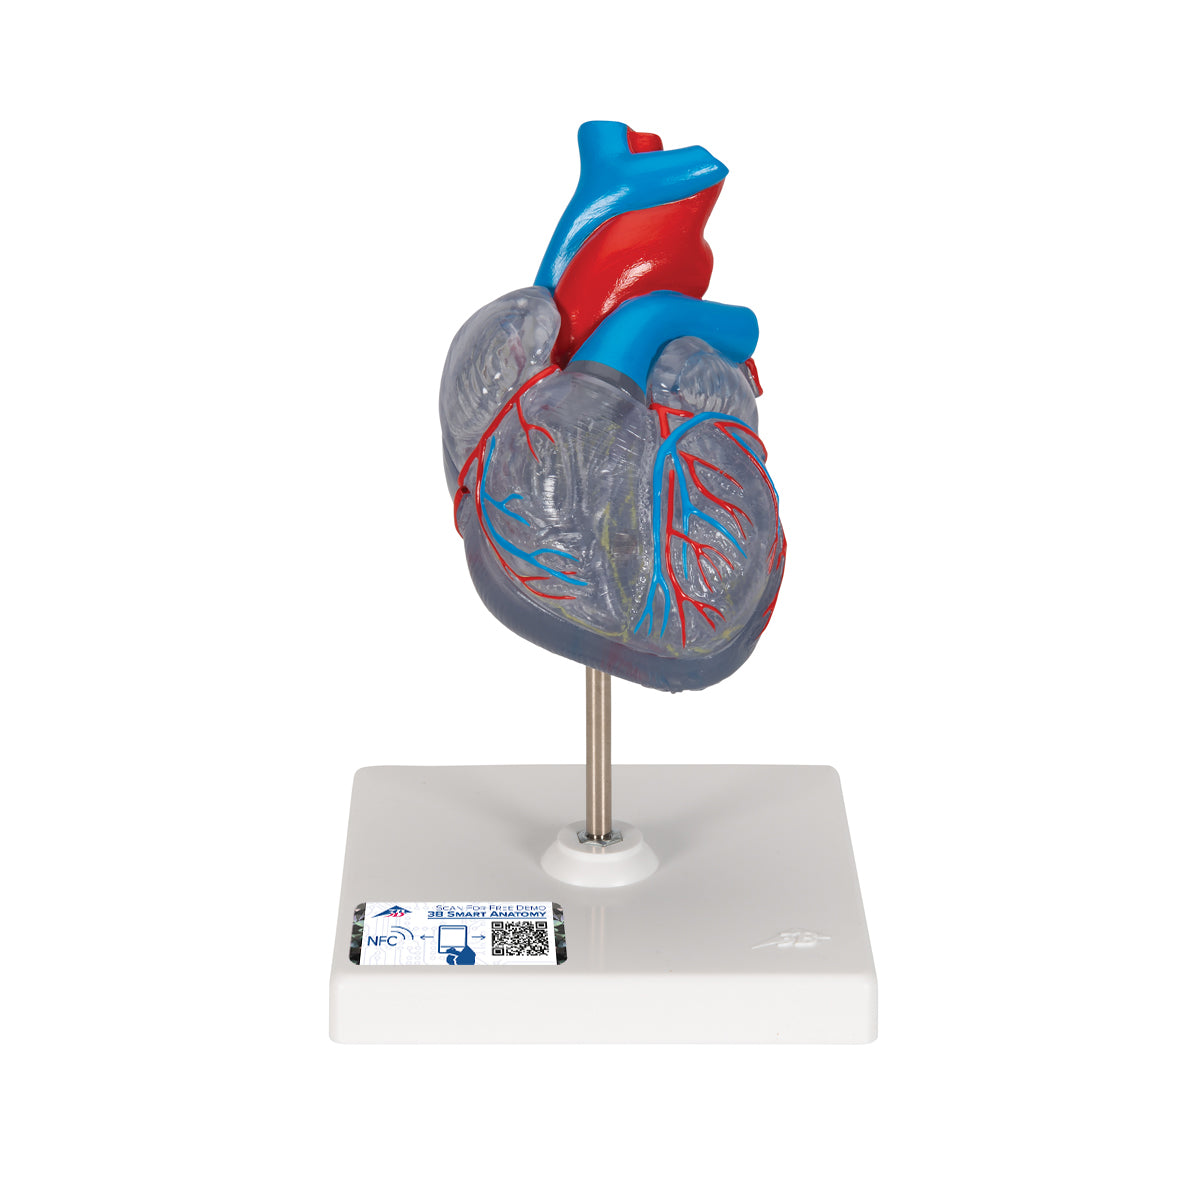 Skalad och transparent hjärtmodell med impulsledningssystemet